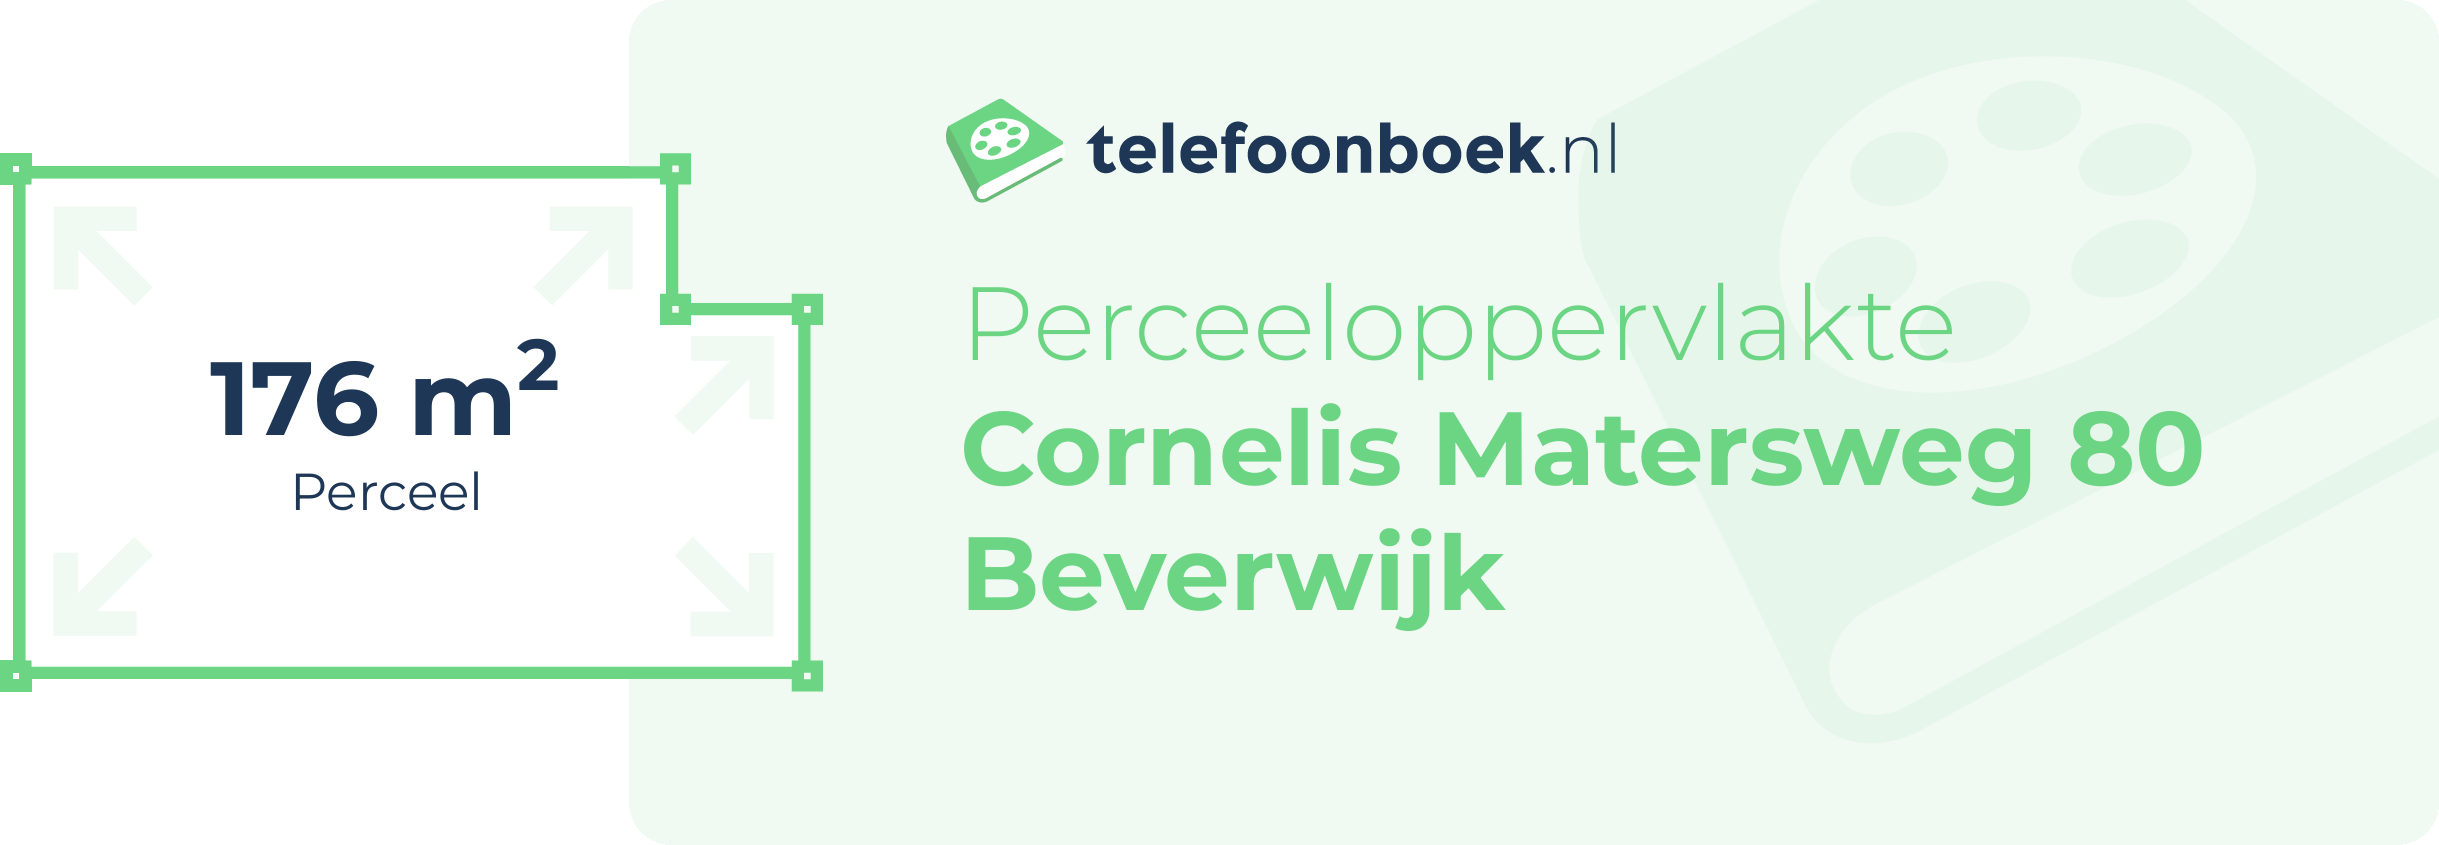 Perceeloppervlakte Cornelis Matersweg 80 Beverwijk